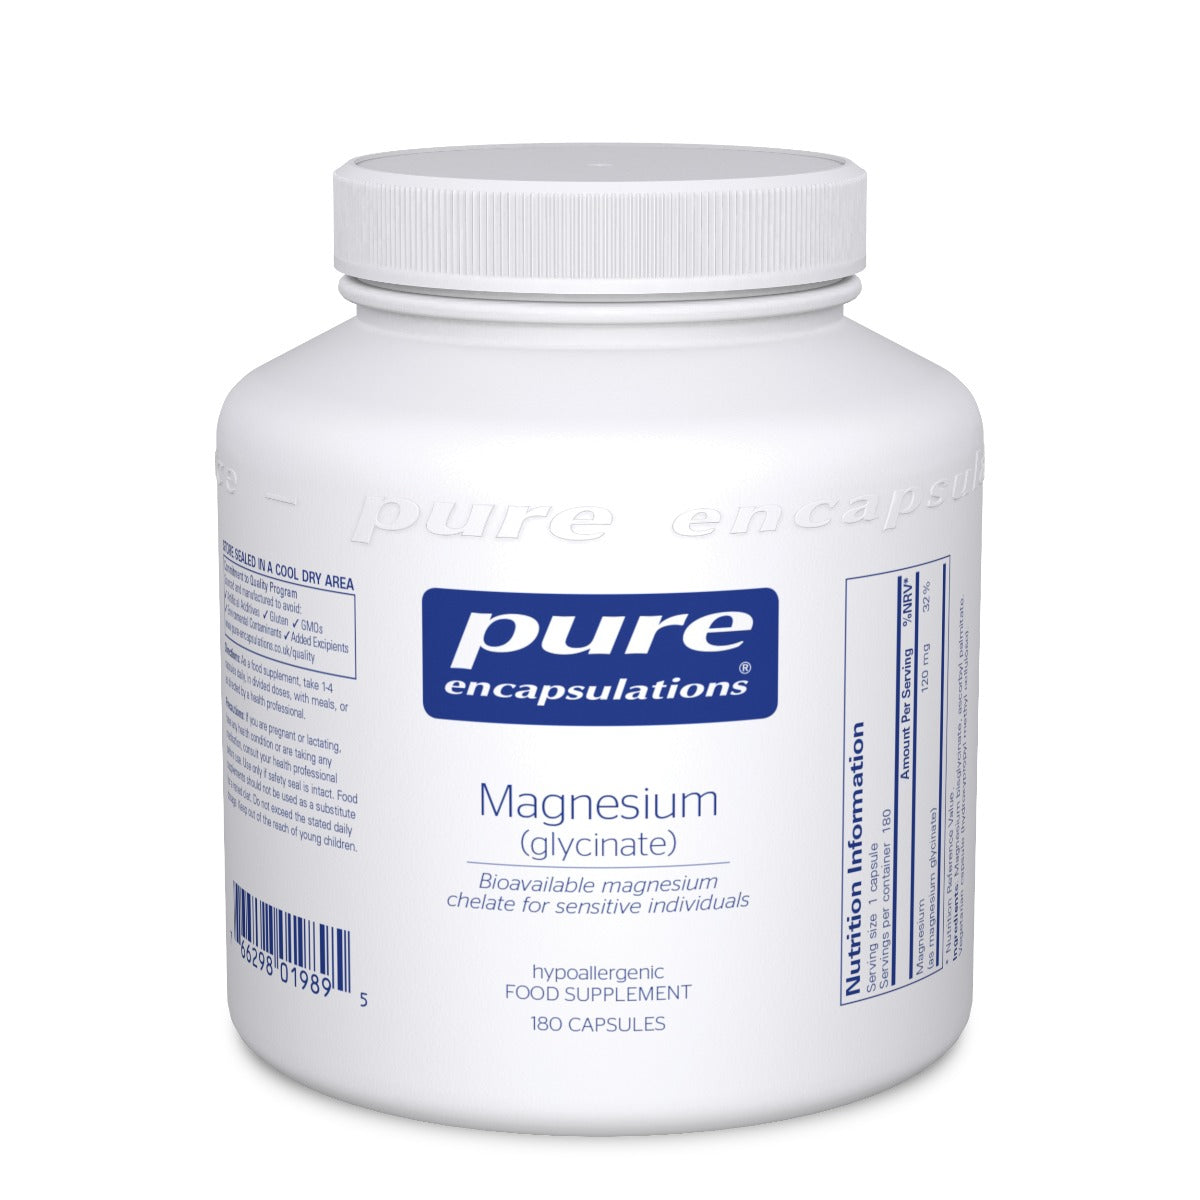 Magnesium (glycinate) - 180 Capsules | Pure Encapsulations